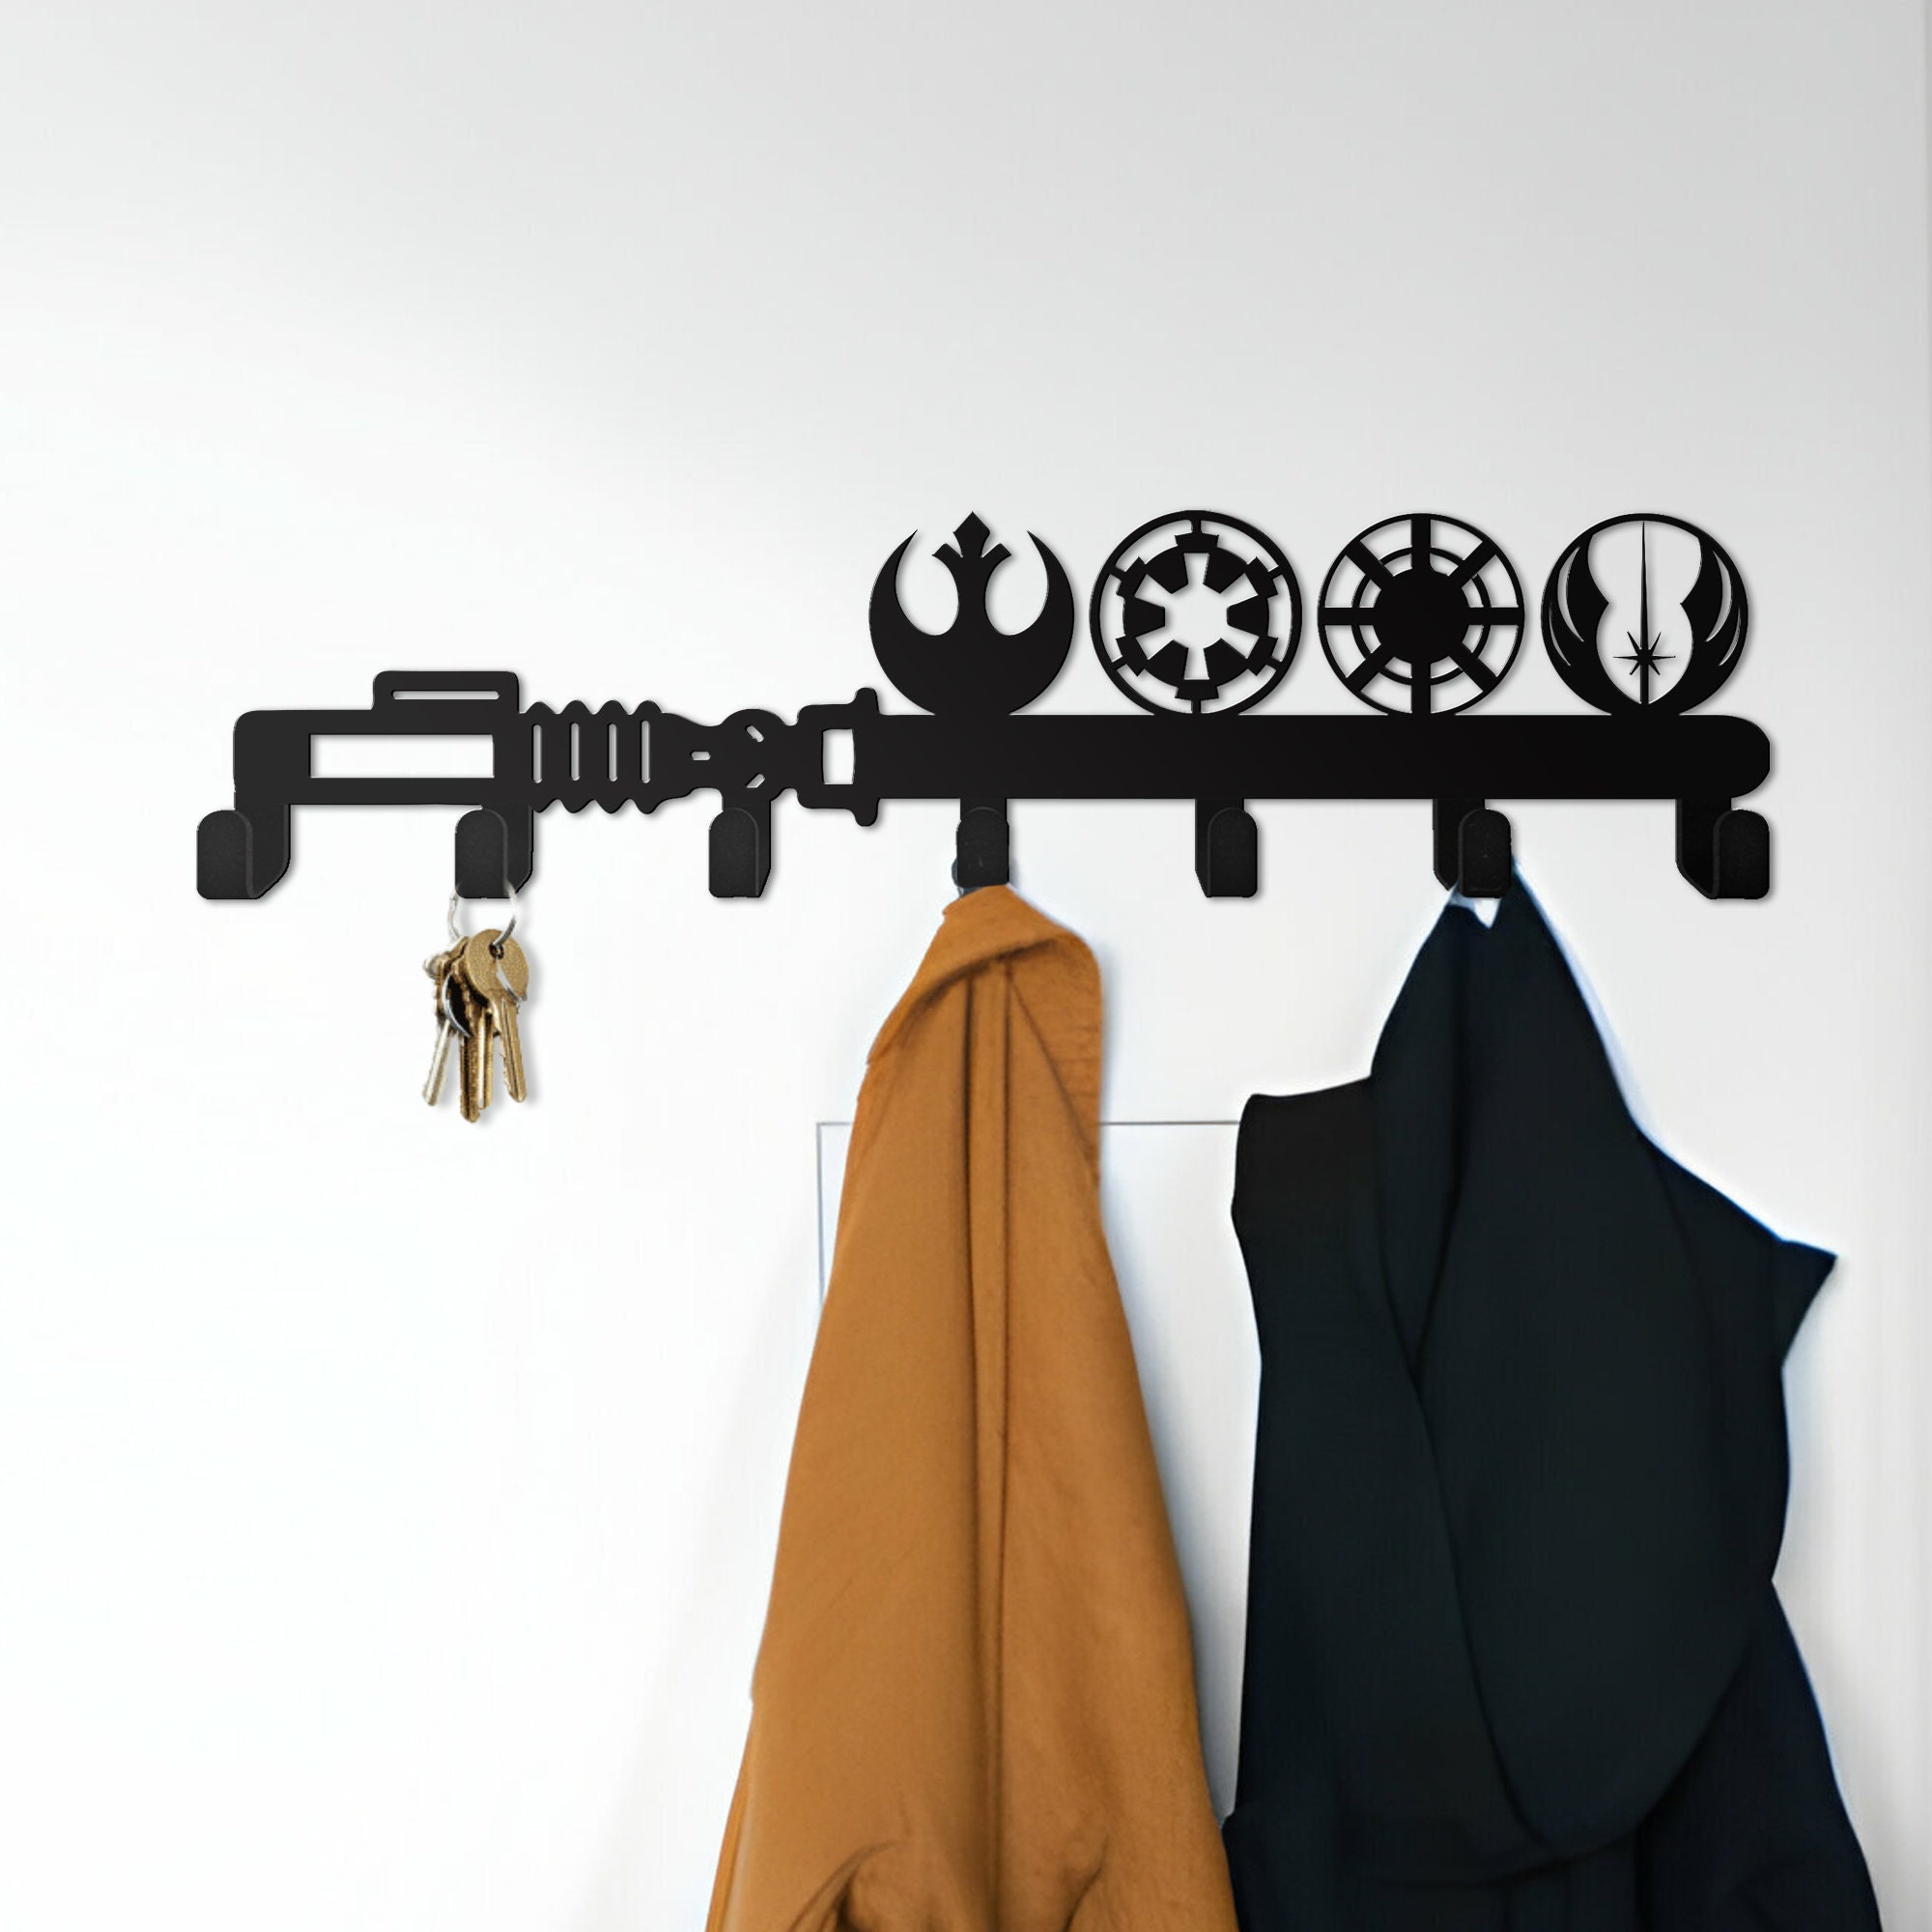 Star Wars Symbols Key Holder, Disney Key Holder